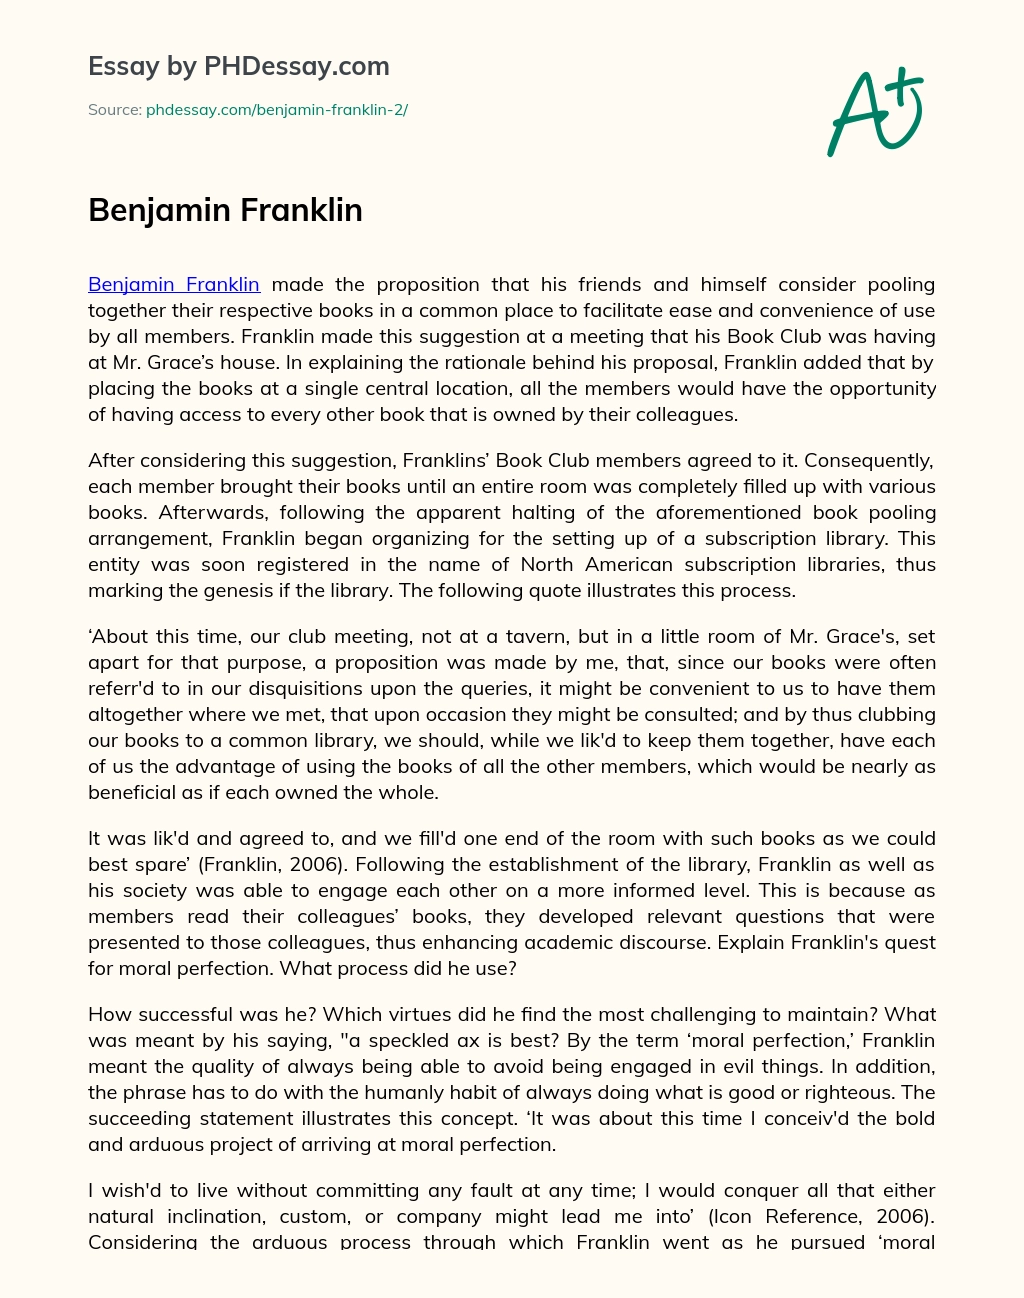 Benjamin Franklin essay